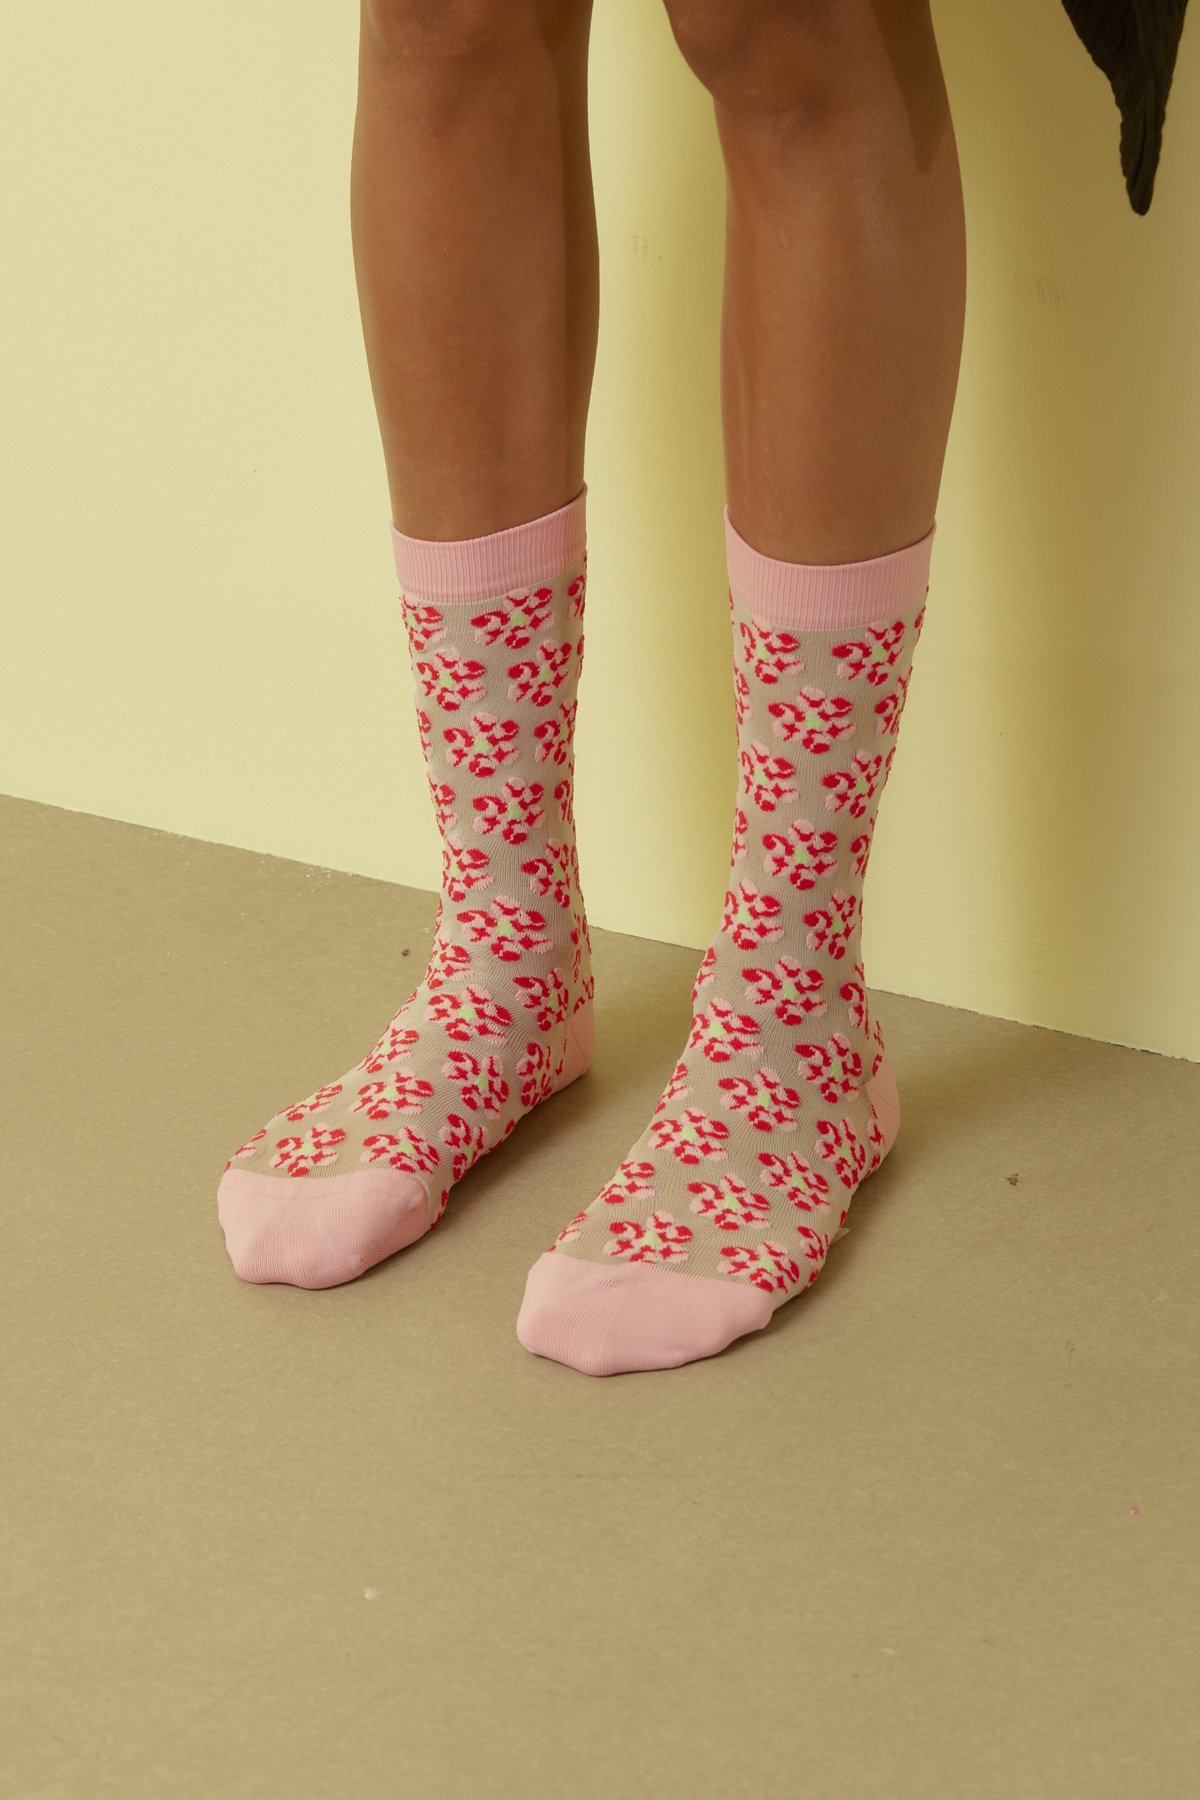 HENRIK VIBSKOV / Boxing Flower Socks Femme / Transparent  Pink Box Flowers